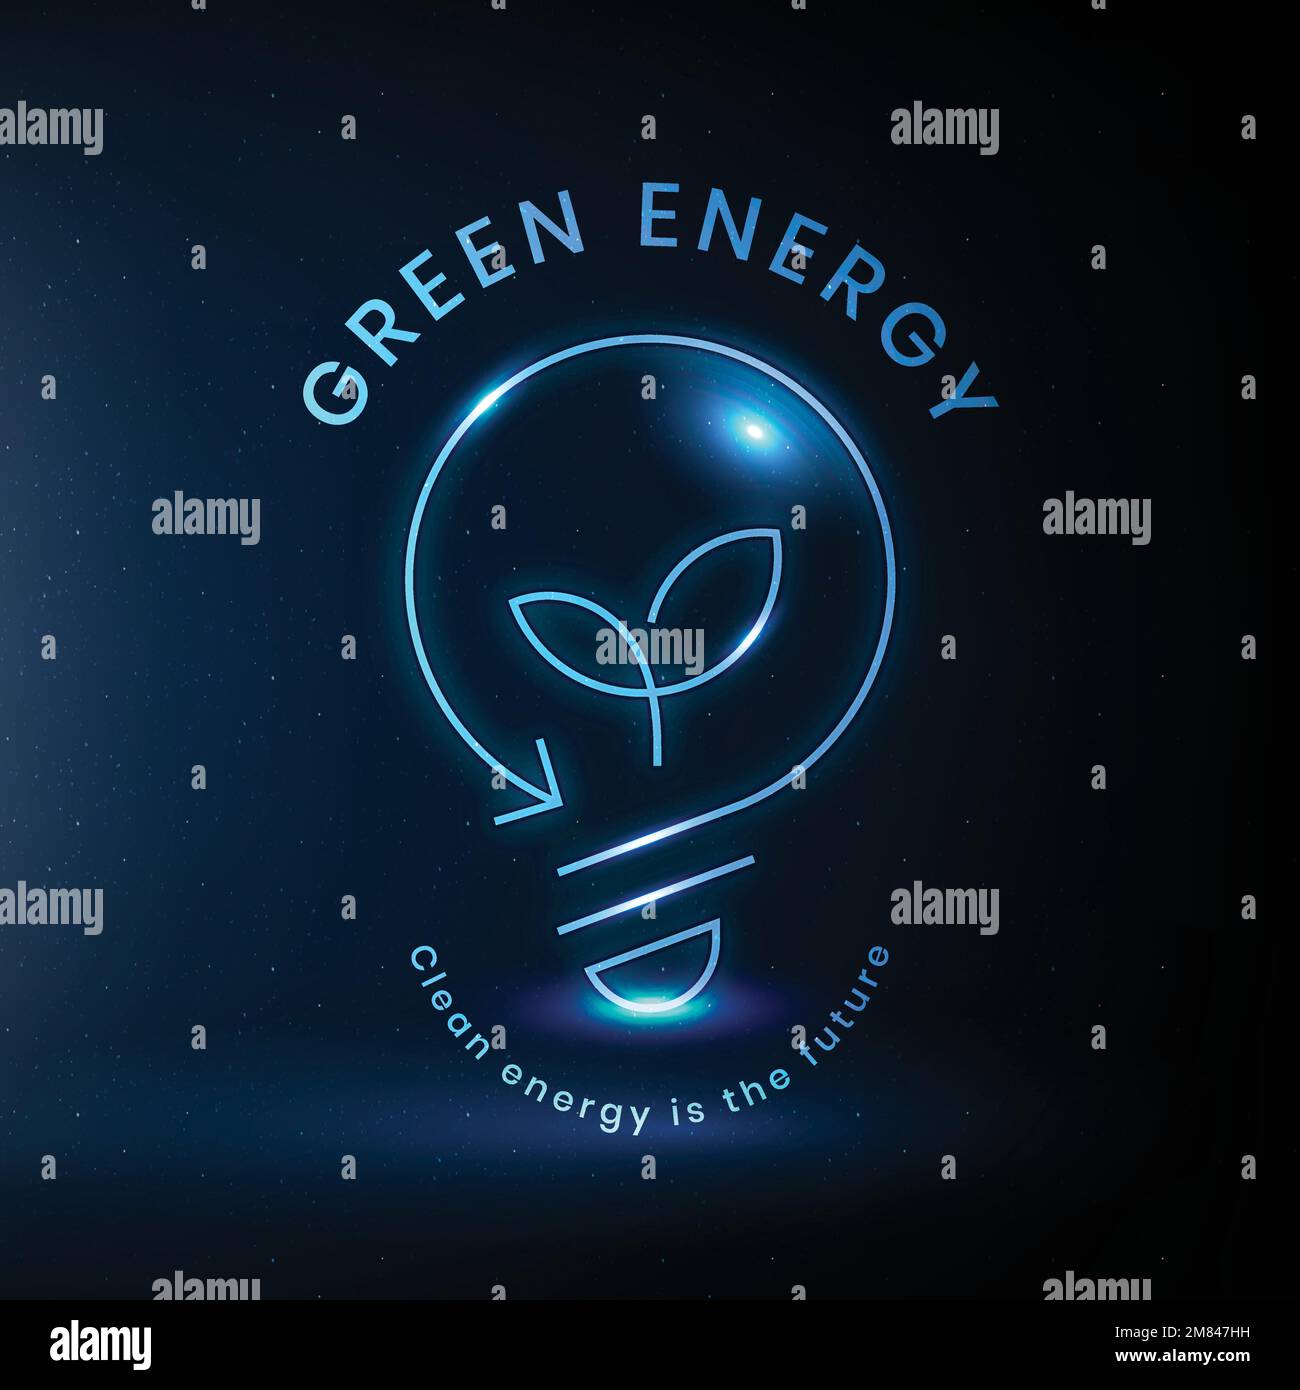 Environmental light bulb logo vector with green energy text Stock Vector